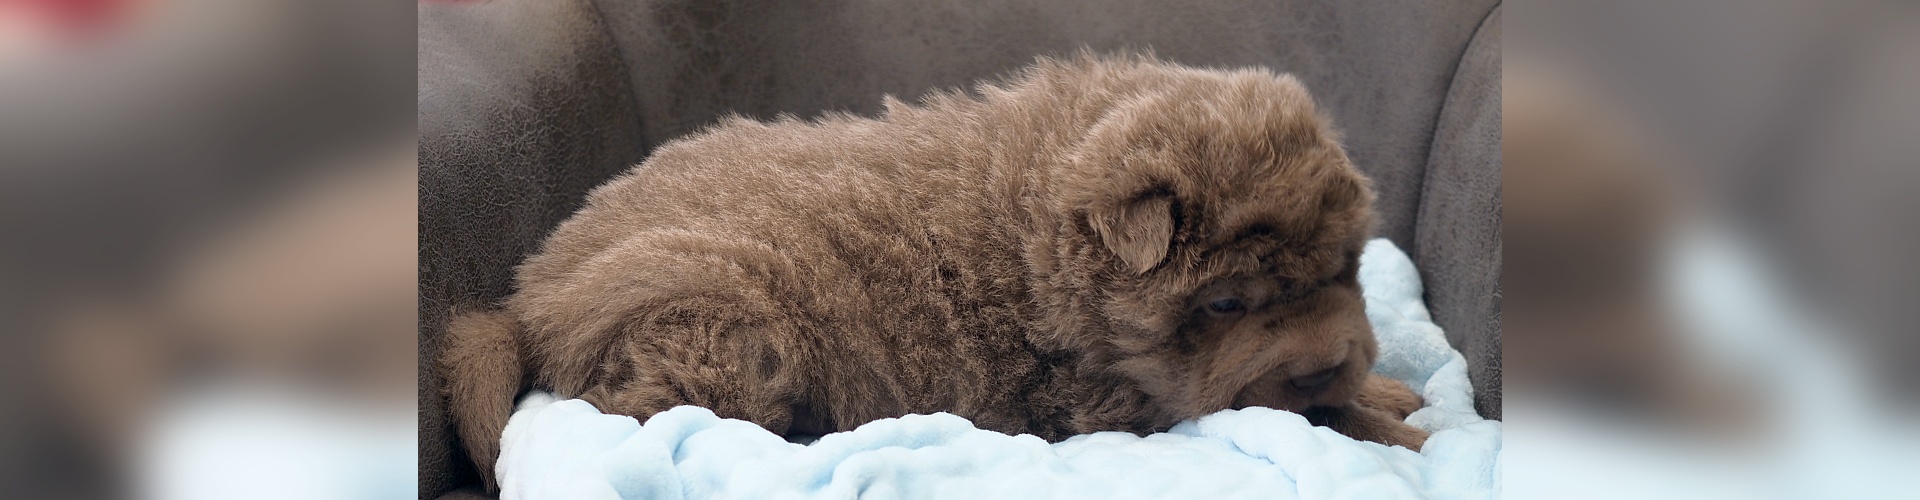 Bear Coat Shar-Pei puppies